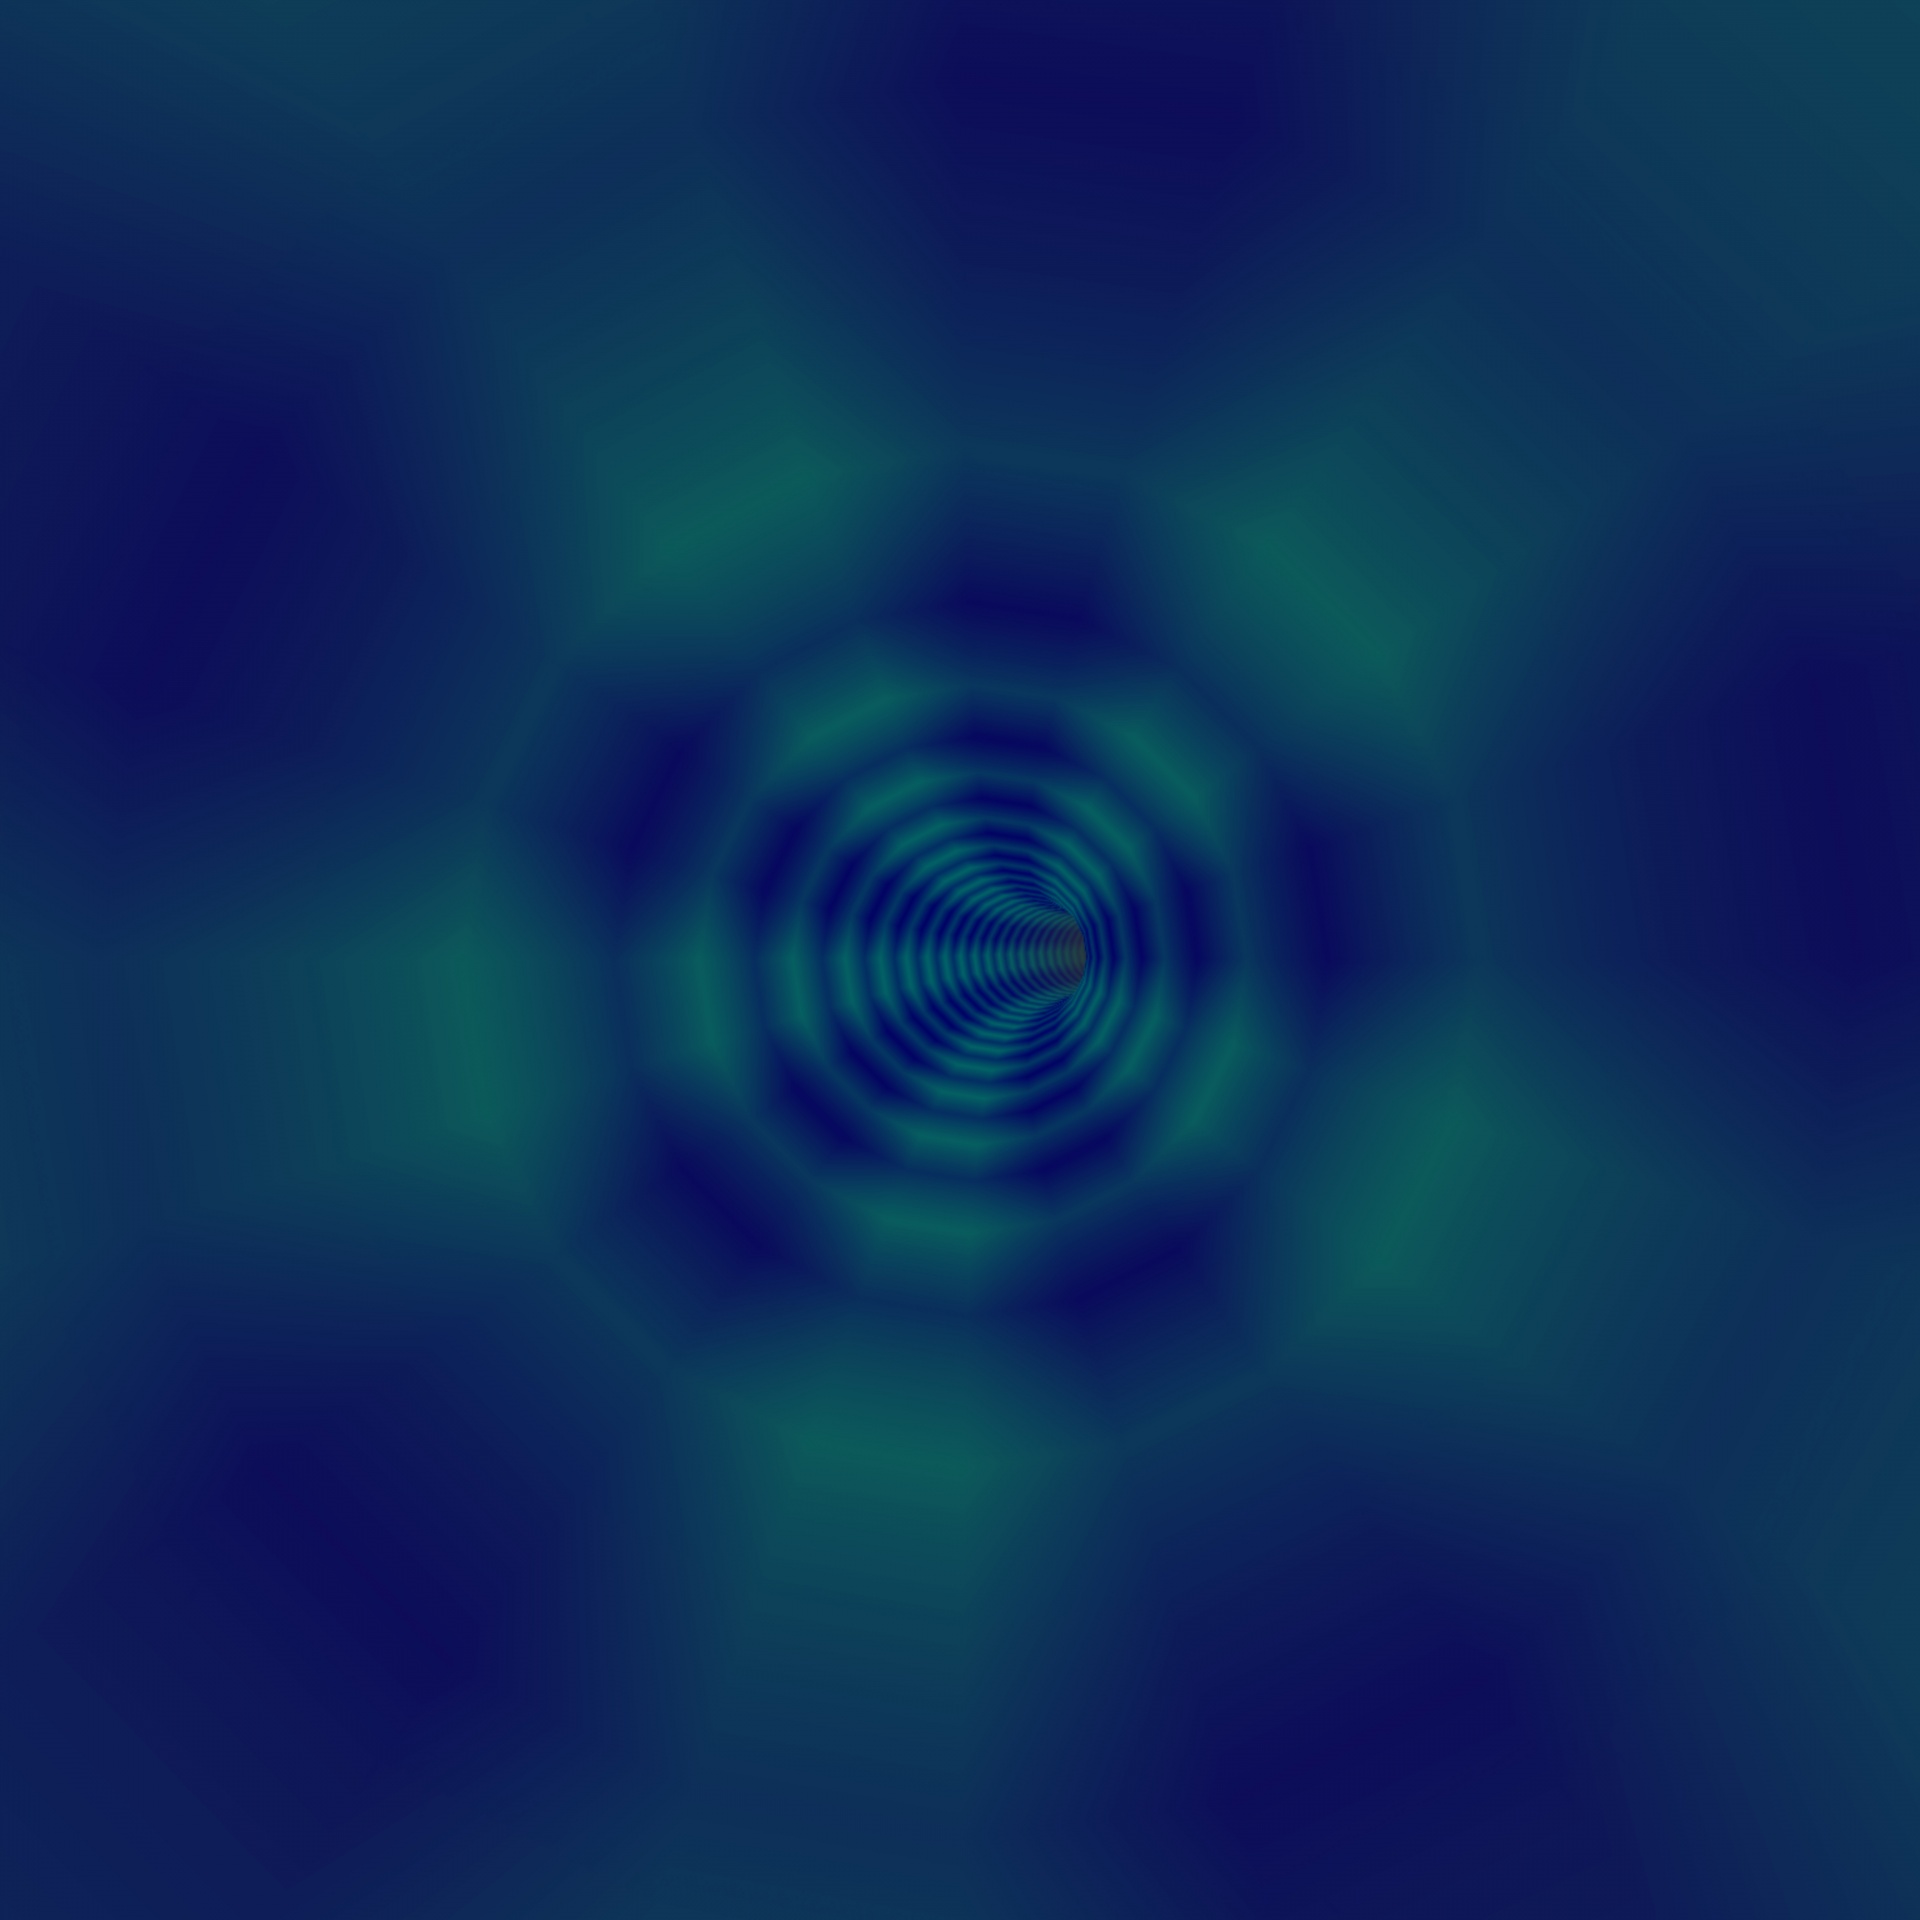 3d vortex spiral free photo